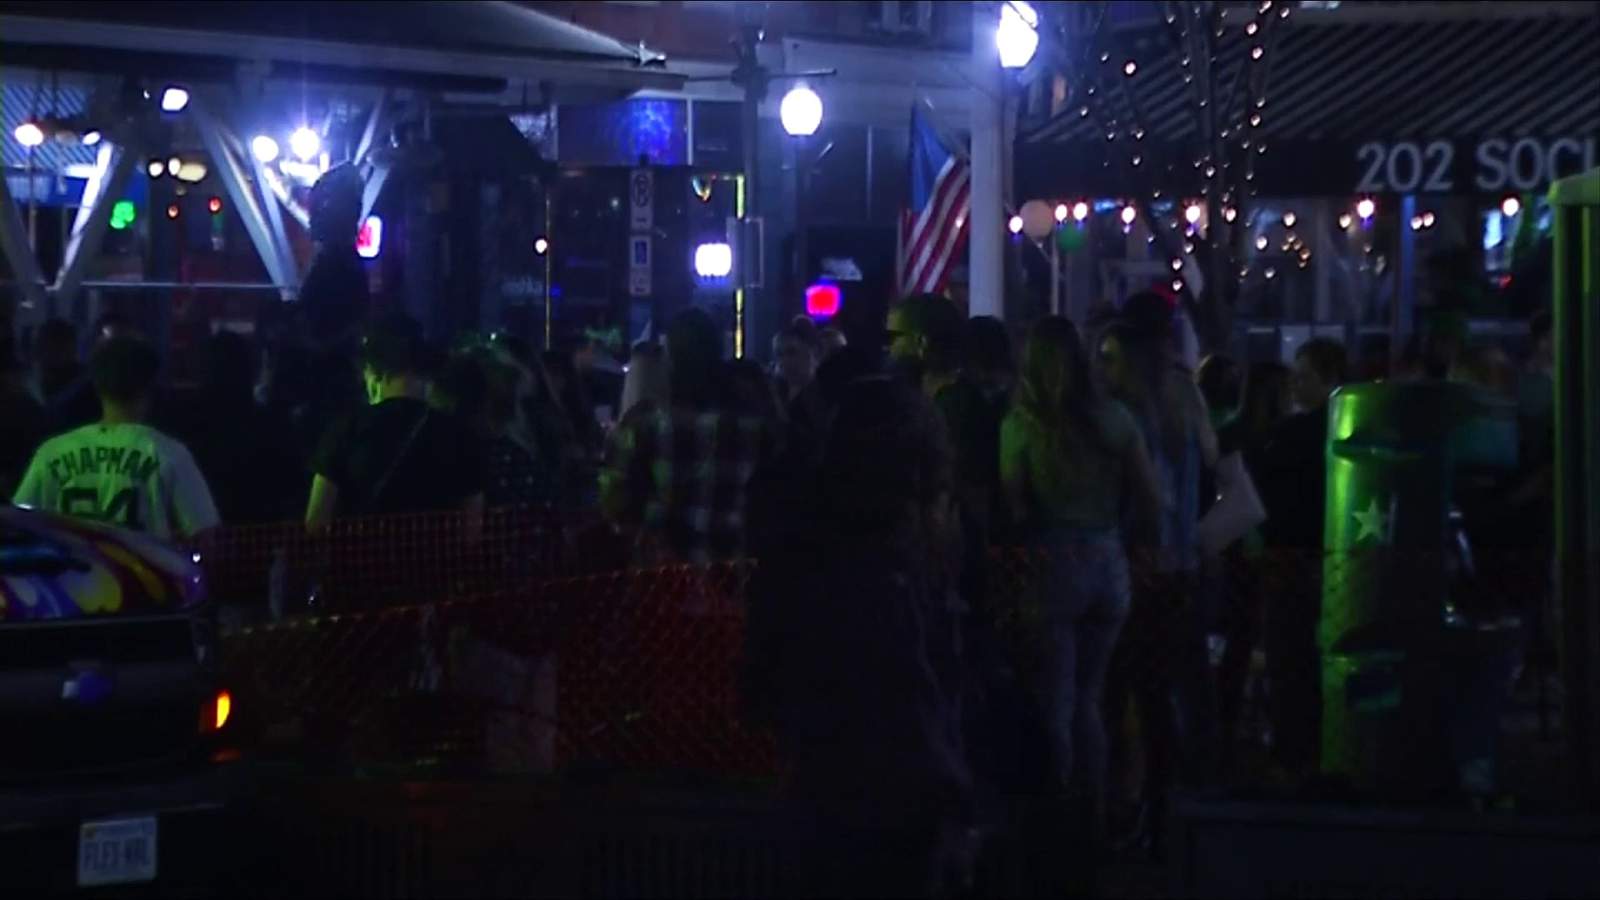 Roanoke mayor scorns late night St. Patrick’s Day celebrations downtown